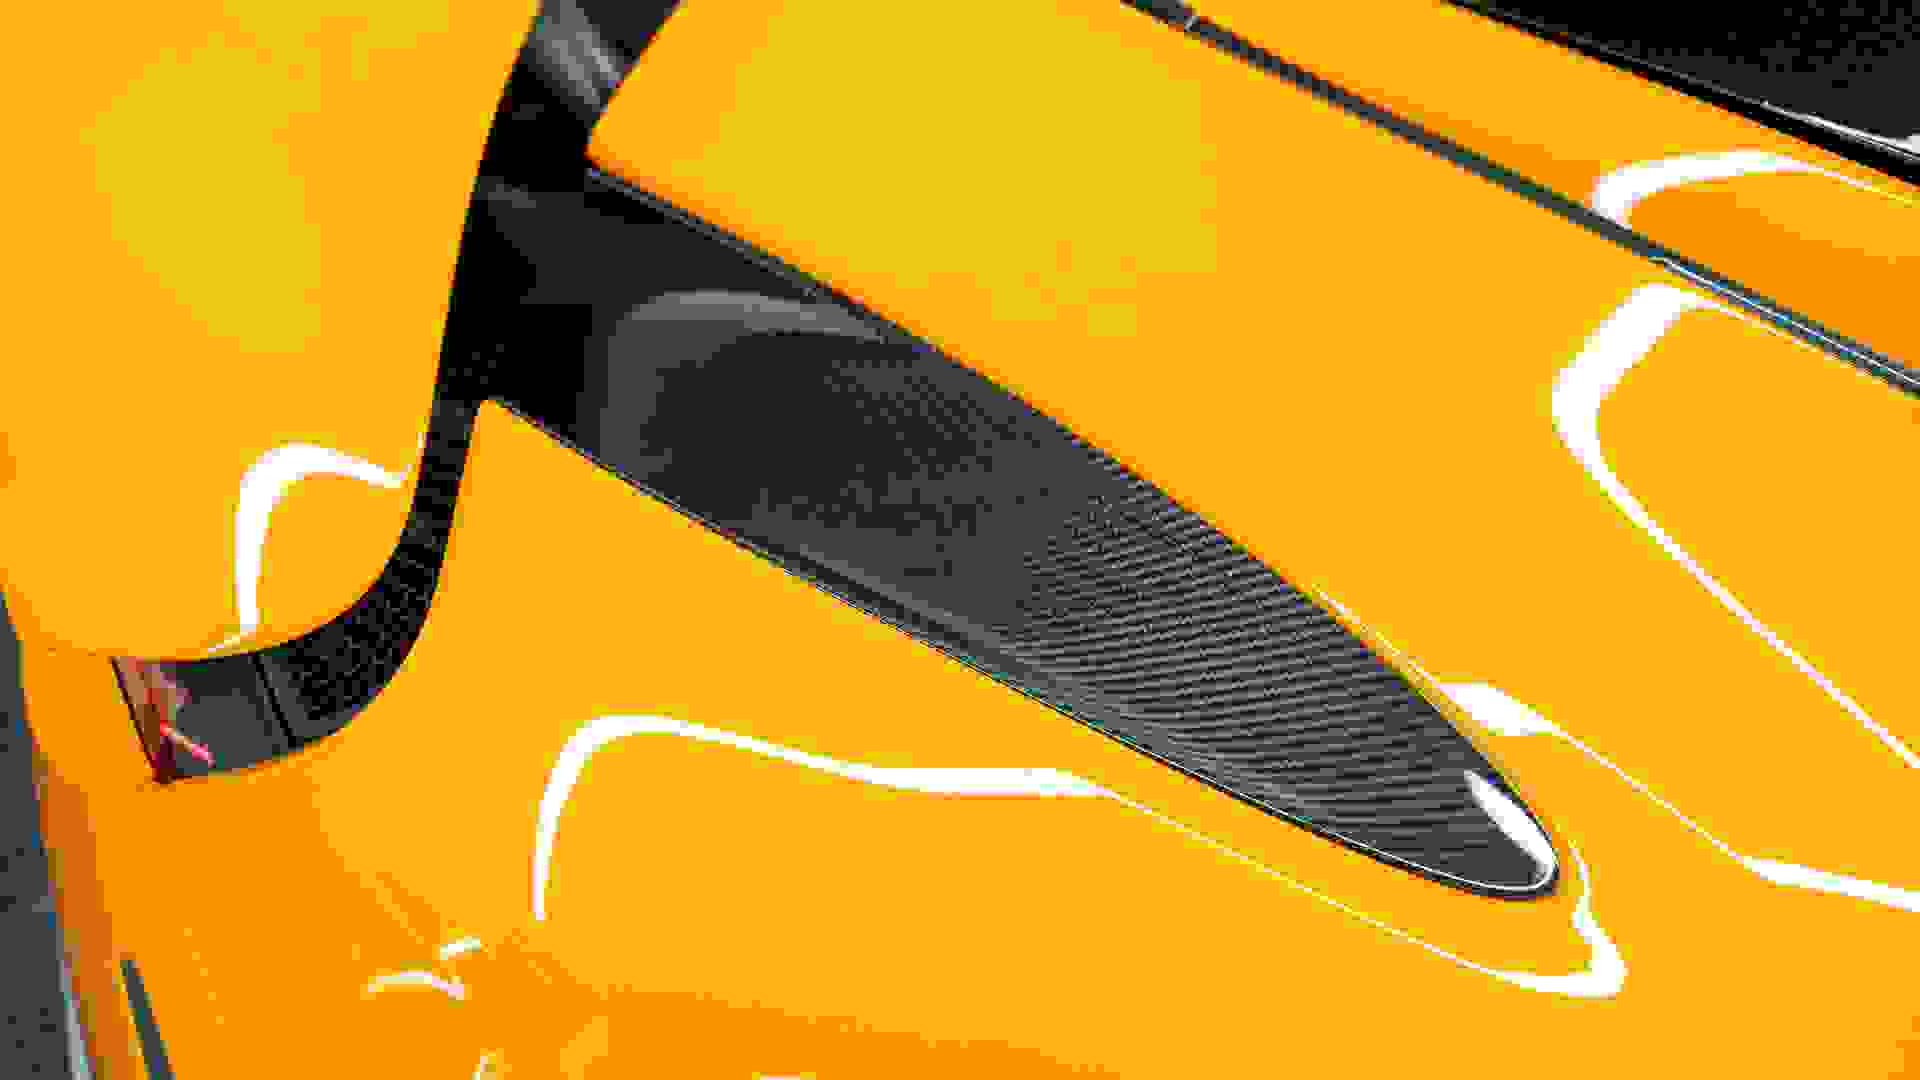 McLaren 720S Photo 380d1e92-7d95-4744-9648-22b705d4e50d.jpg